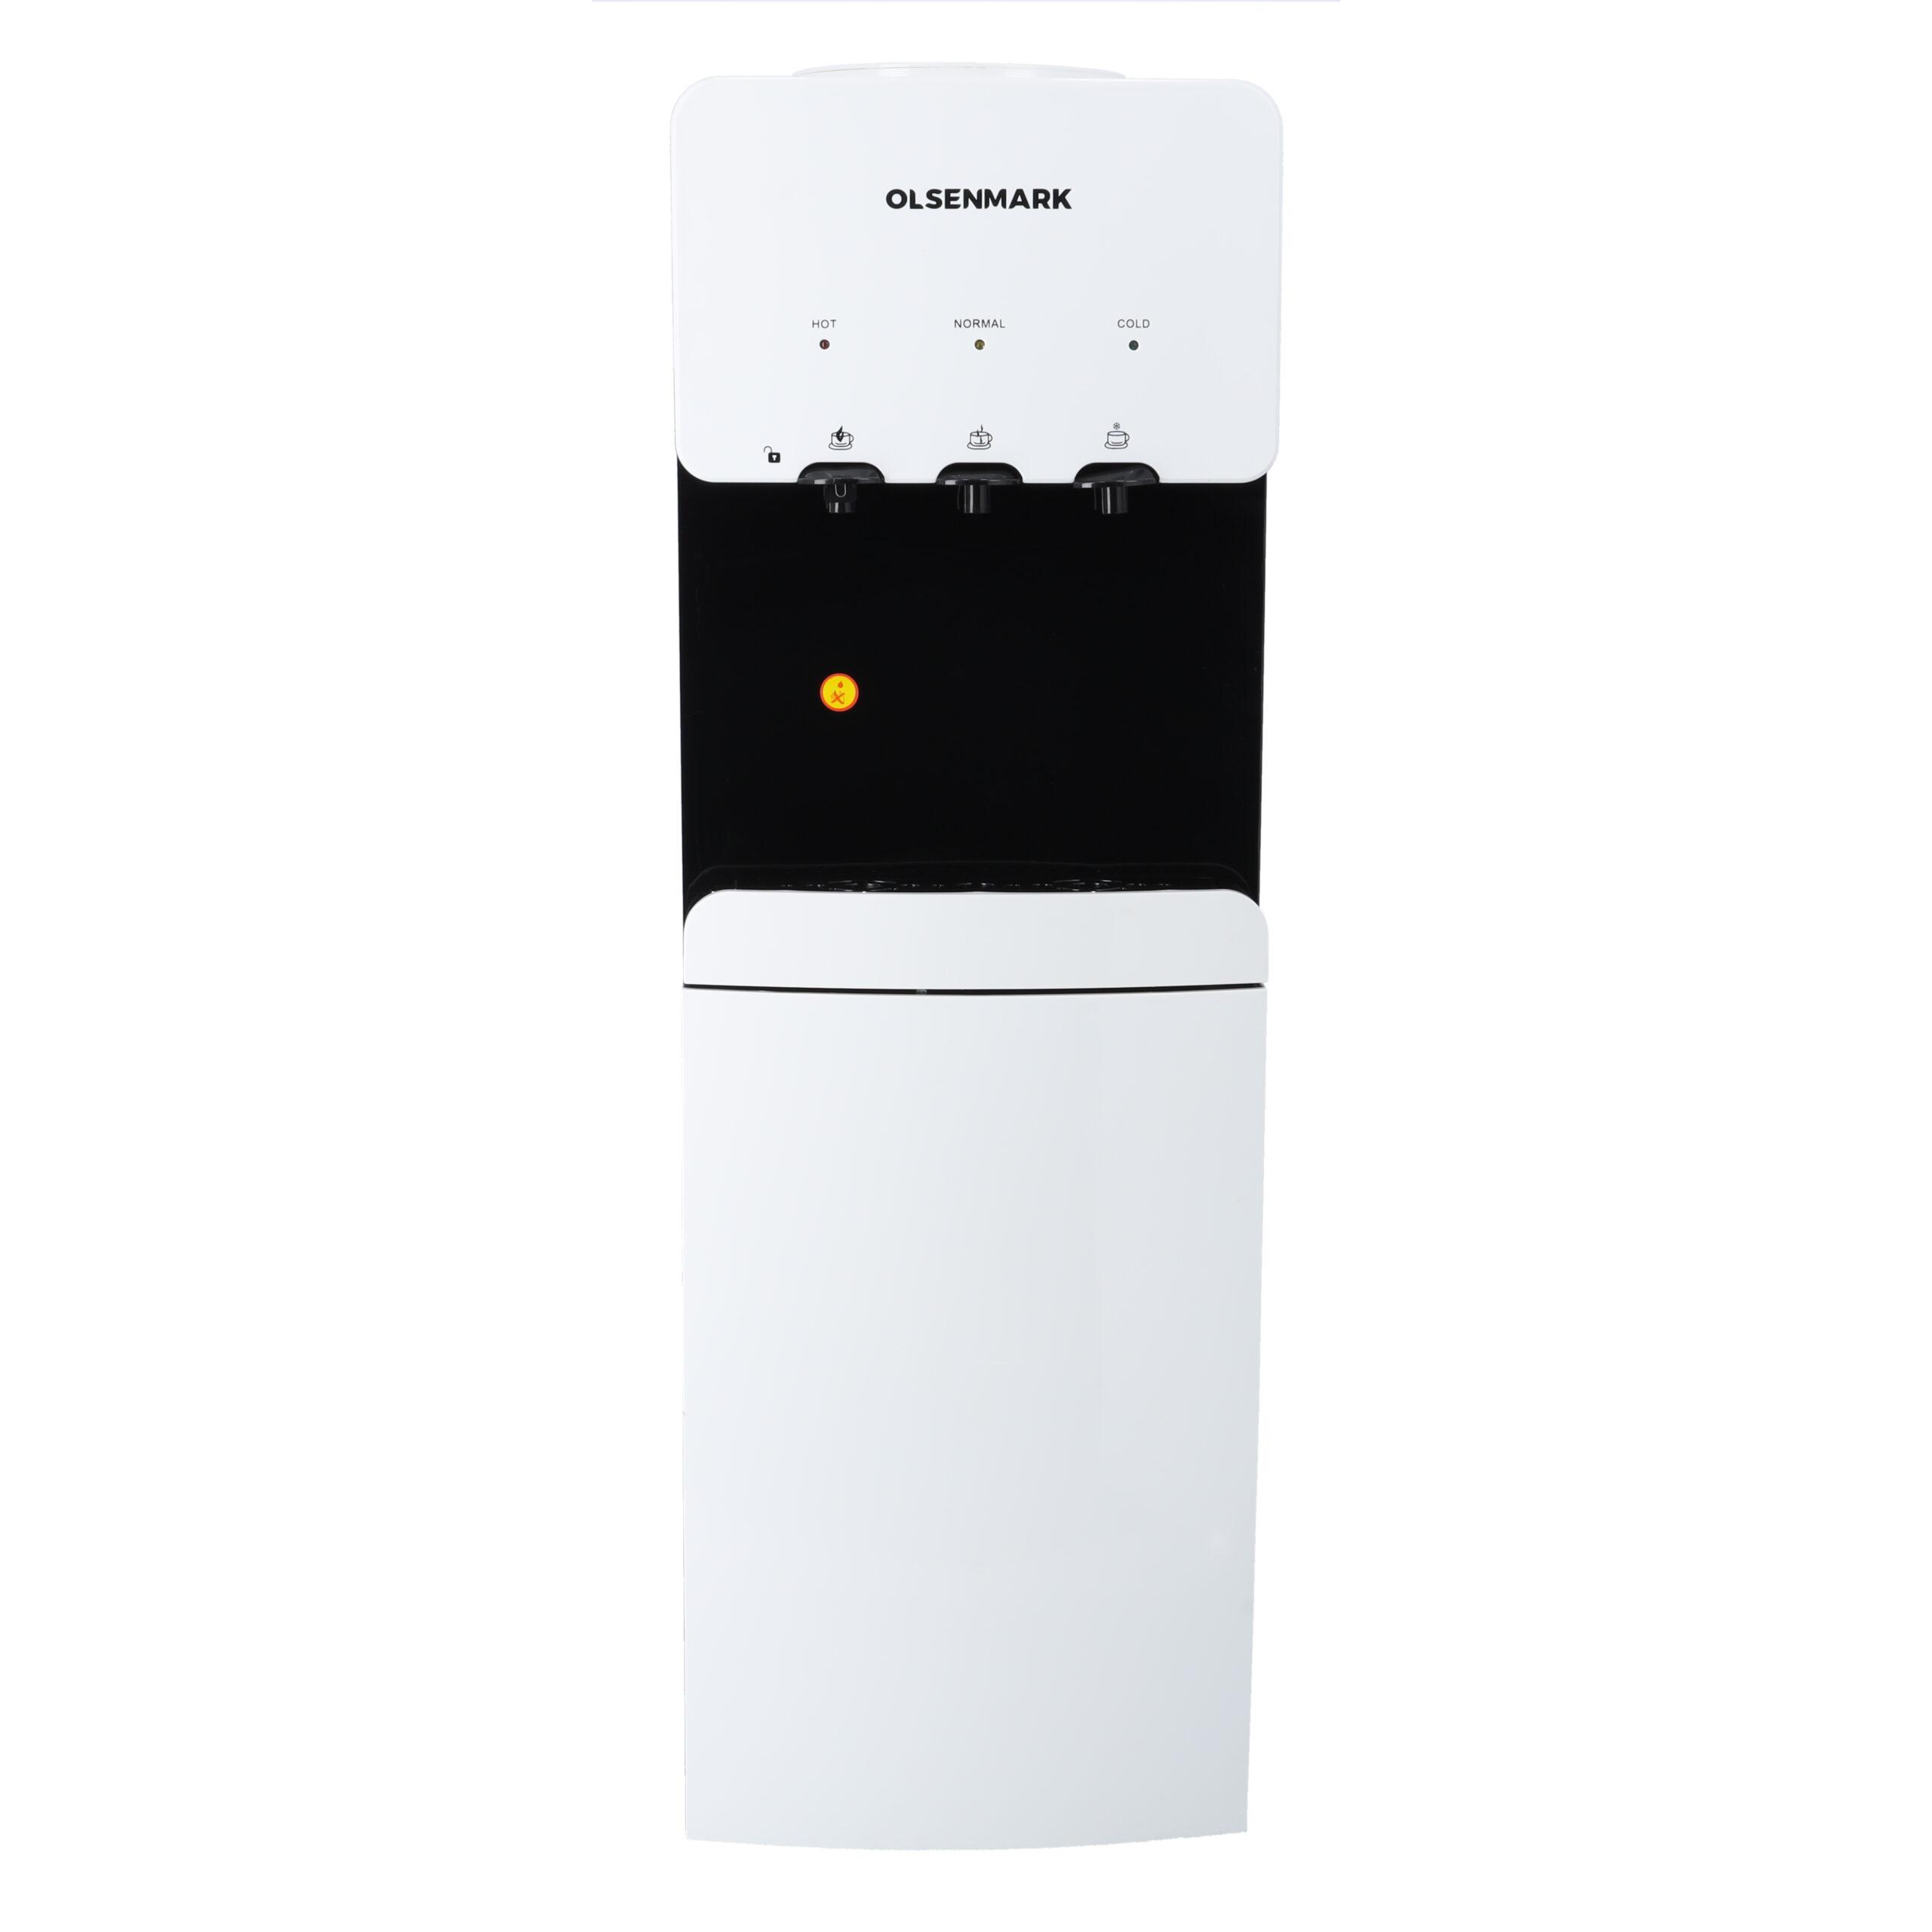 برادة ماء (كولر) مع ثلاجة Olsenmark Hot & Cold Water Dispenser With Refrigerator